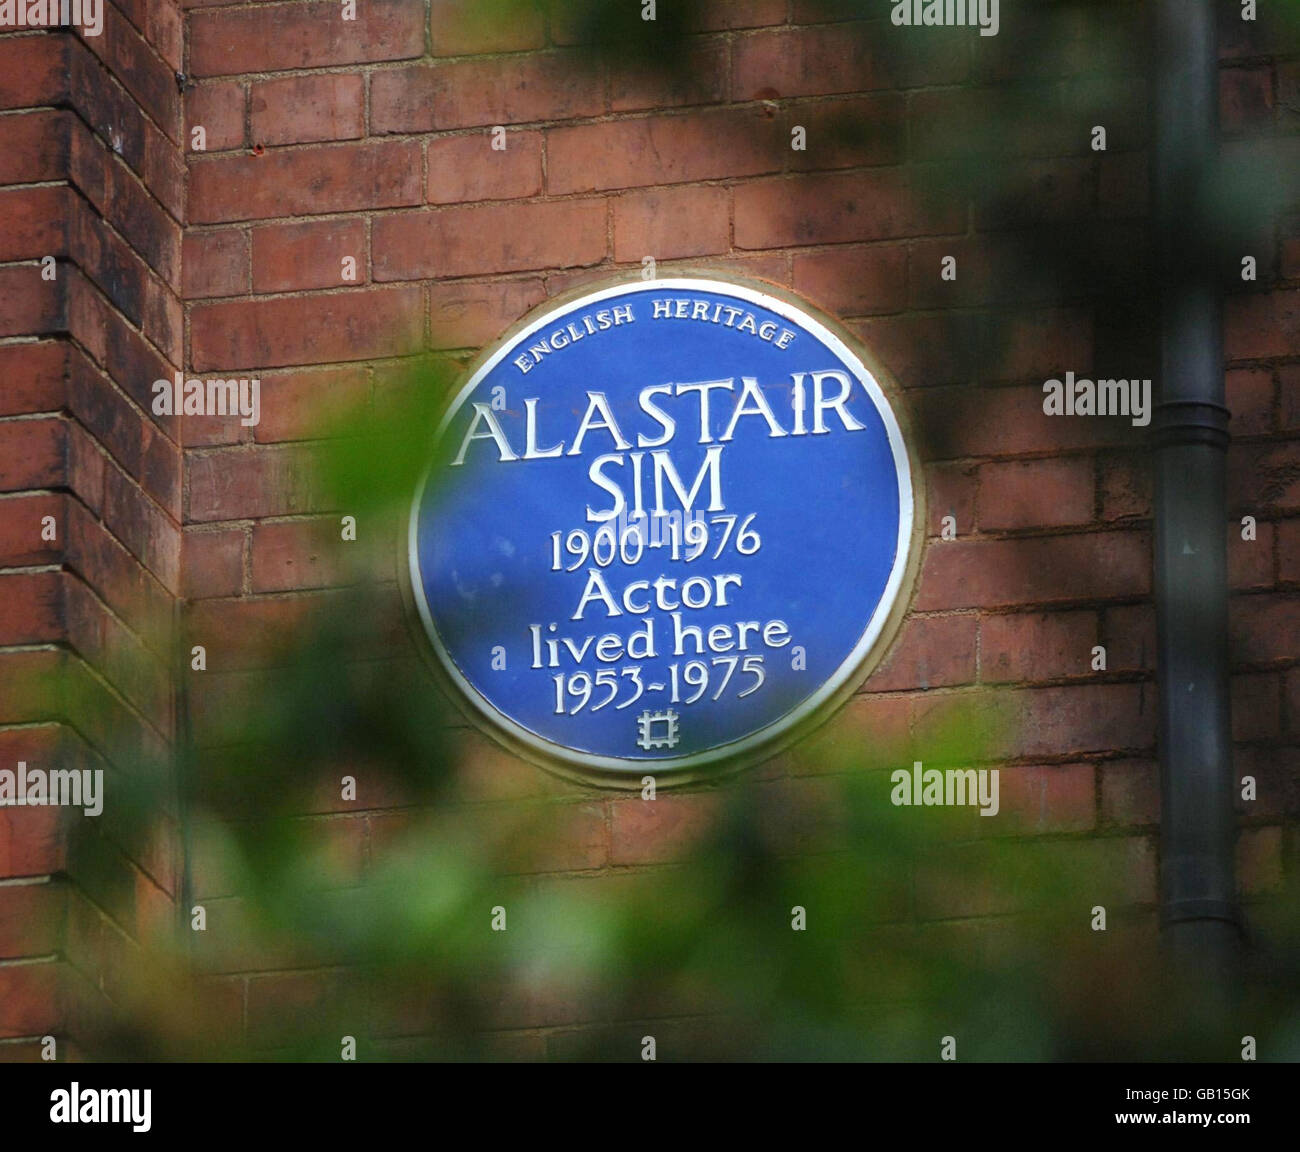 Une plaque bleue du patrimoine anglais à l'ancienne résidence du légendaire acteur Alastair SIM, qui a été dévoilée aujourd'hui à Frognal Gardens, dans le nord de Londres. Banque D'Images